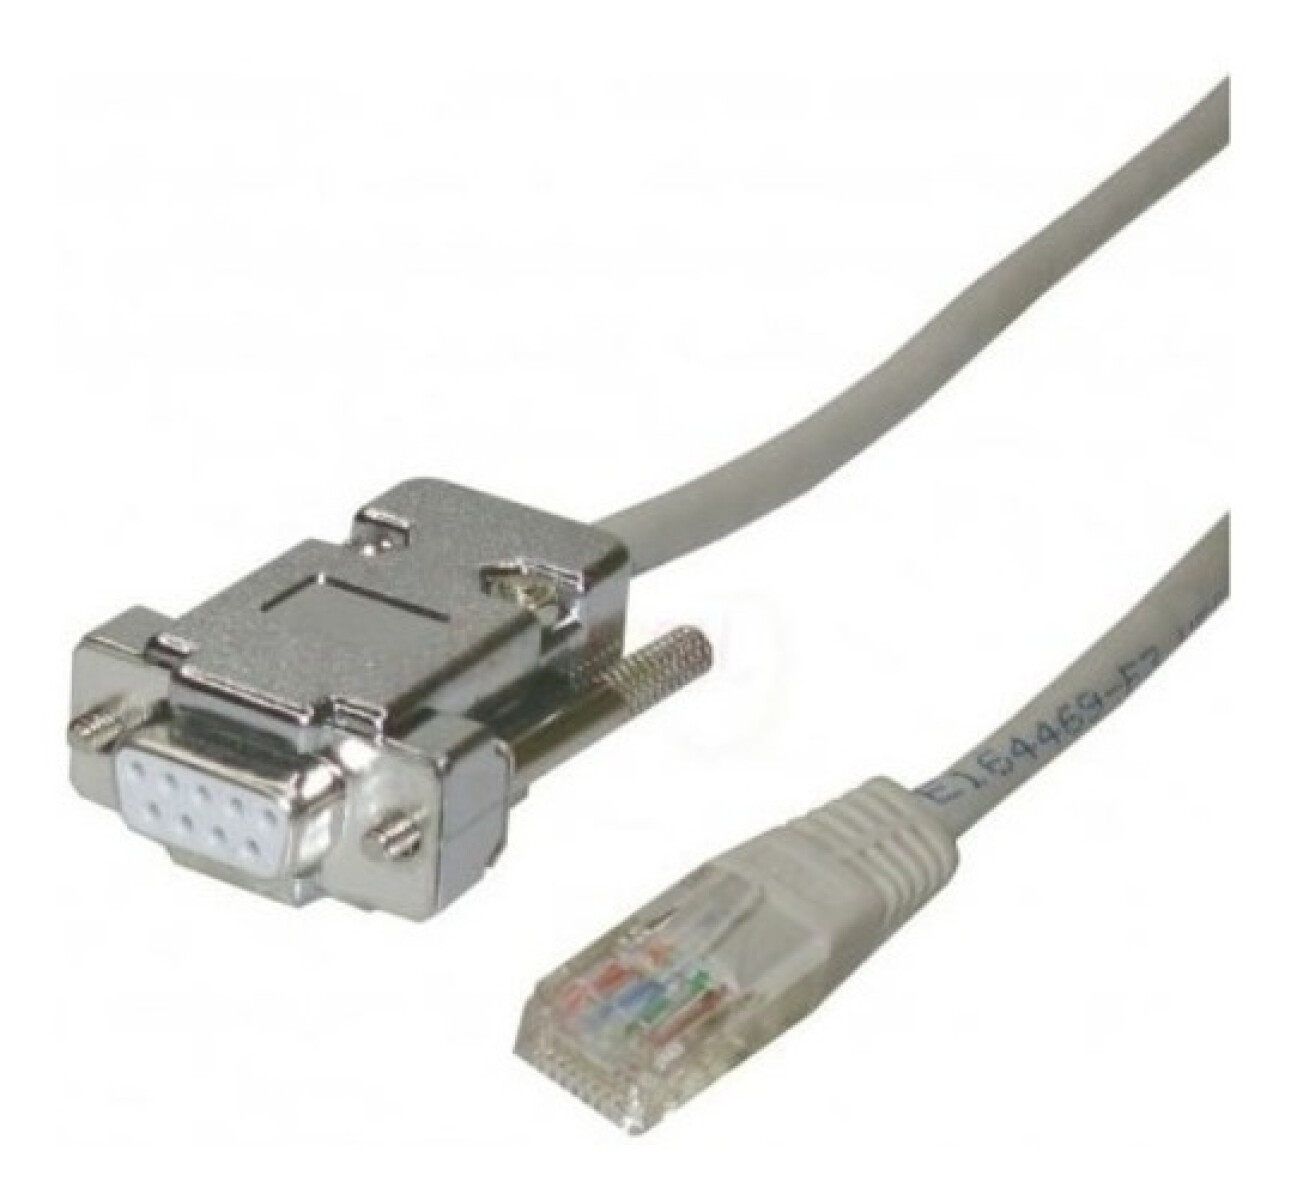 Cable DB9 a RJ45 | Consola / Impacta | OEM - Cable Db9 A Rj45 | Consola / Impacta | Oem 